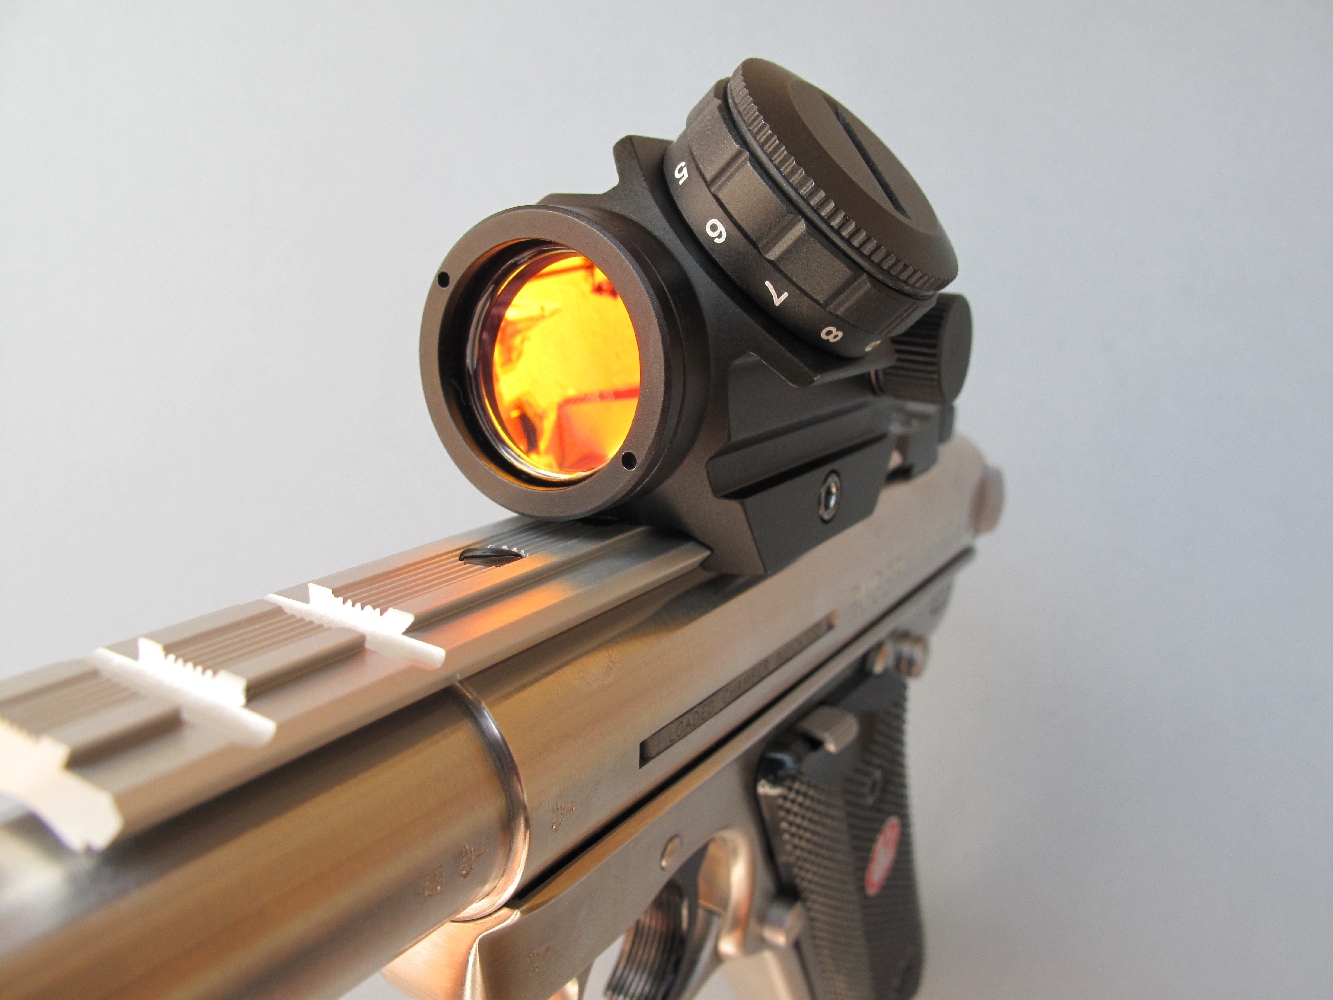 Afin d’effectuer nos tests de précision dans les meilleures conditions possibles, nous avons équipé notre pistolet de test du viseur à point rouge compact modèle « Mini Dot Sight » réalisé par la firme helvétique Swiss Arms.